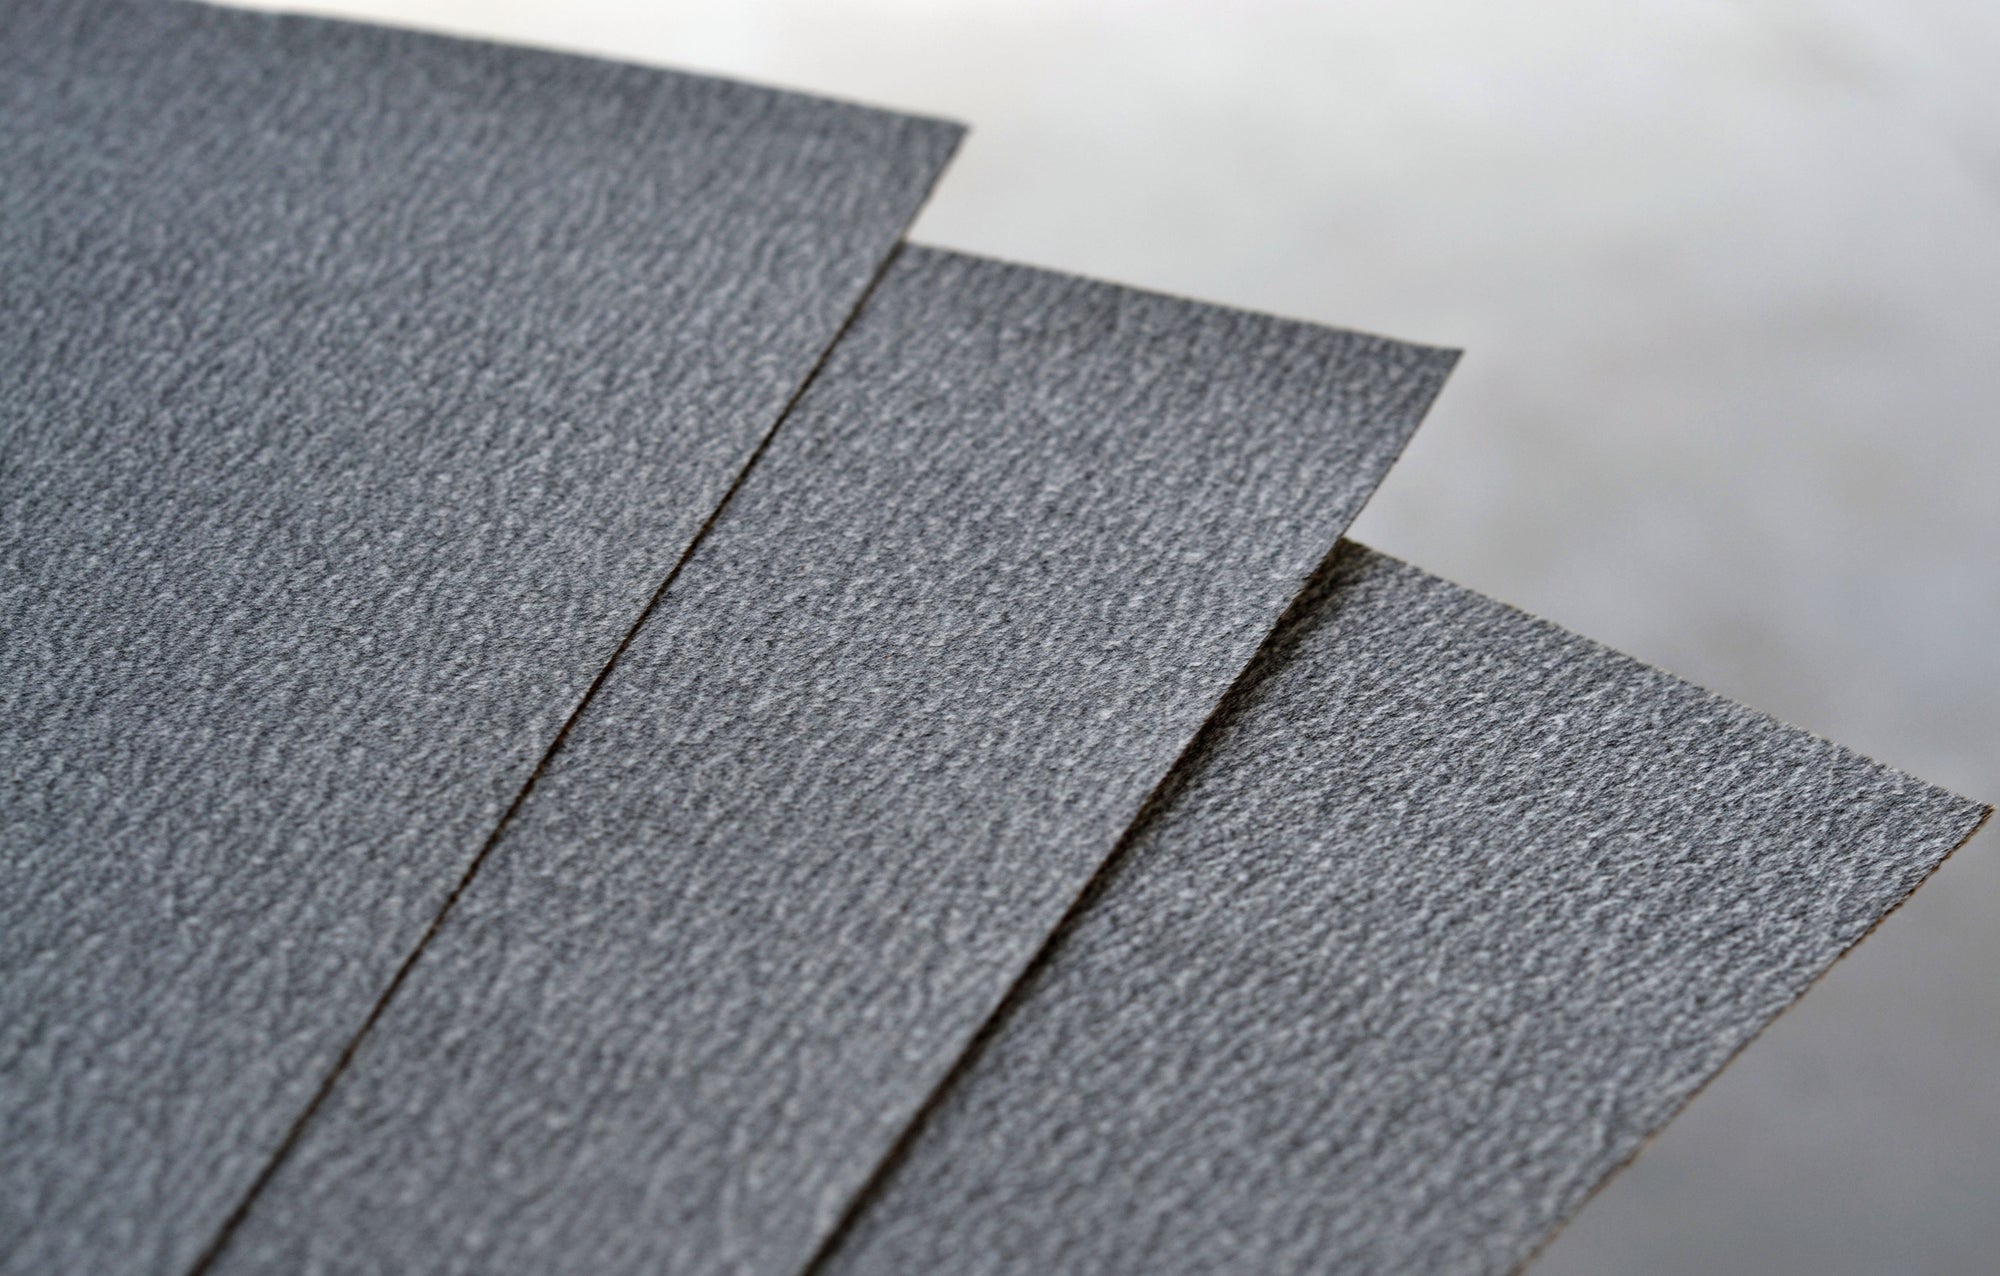 Image of abrasive sheet paper